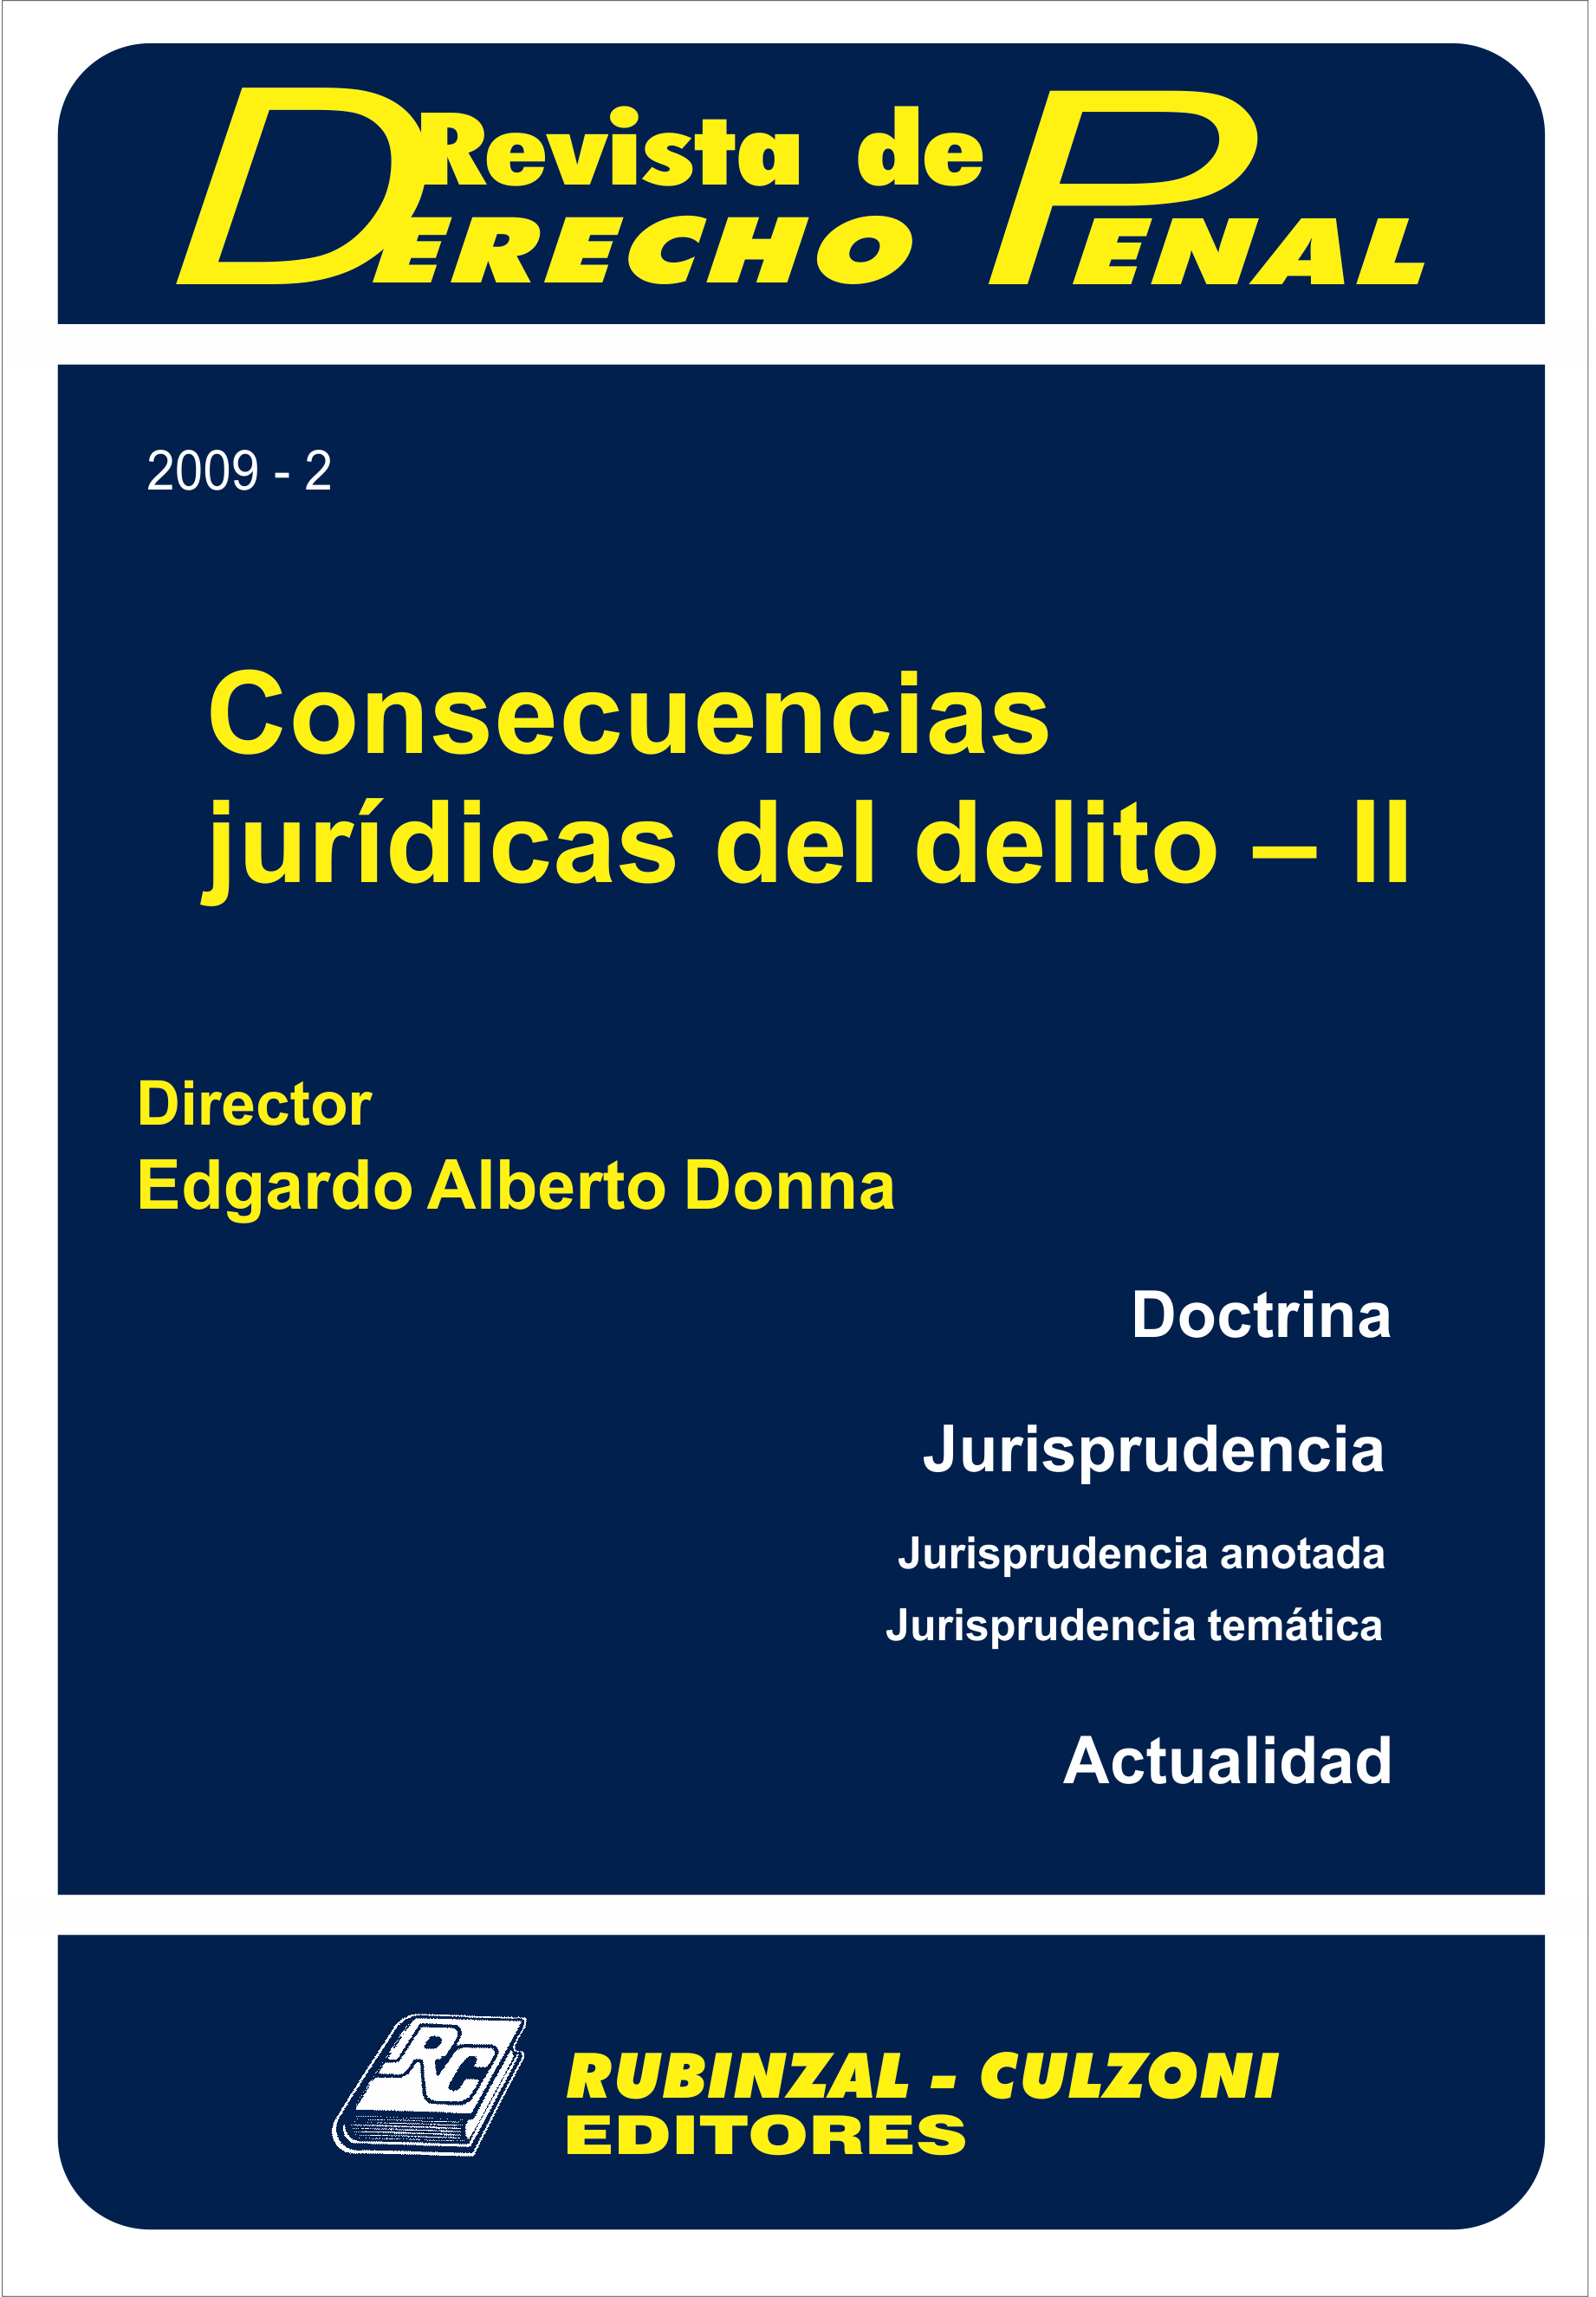 Revista de Derecho Penal - Consecuencias jurídicas del delito - II